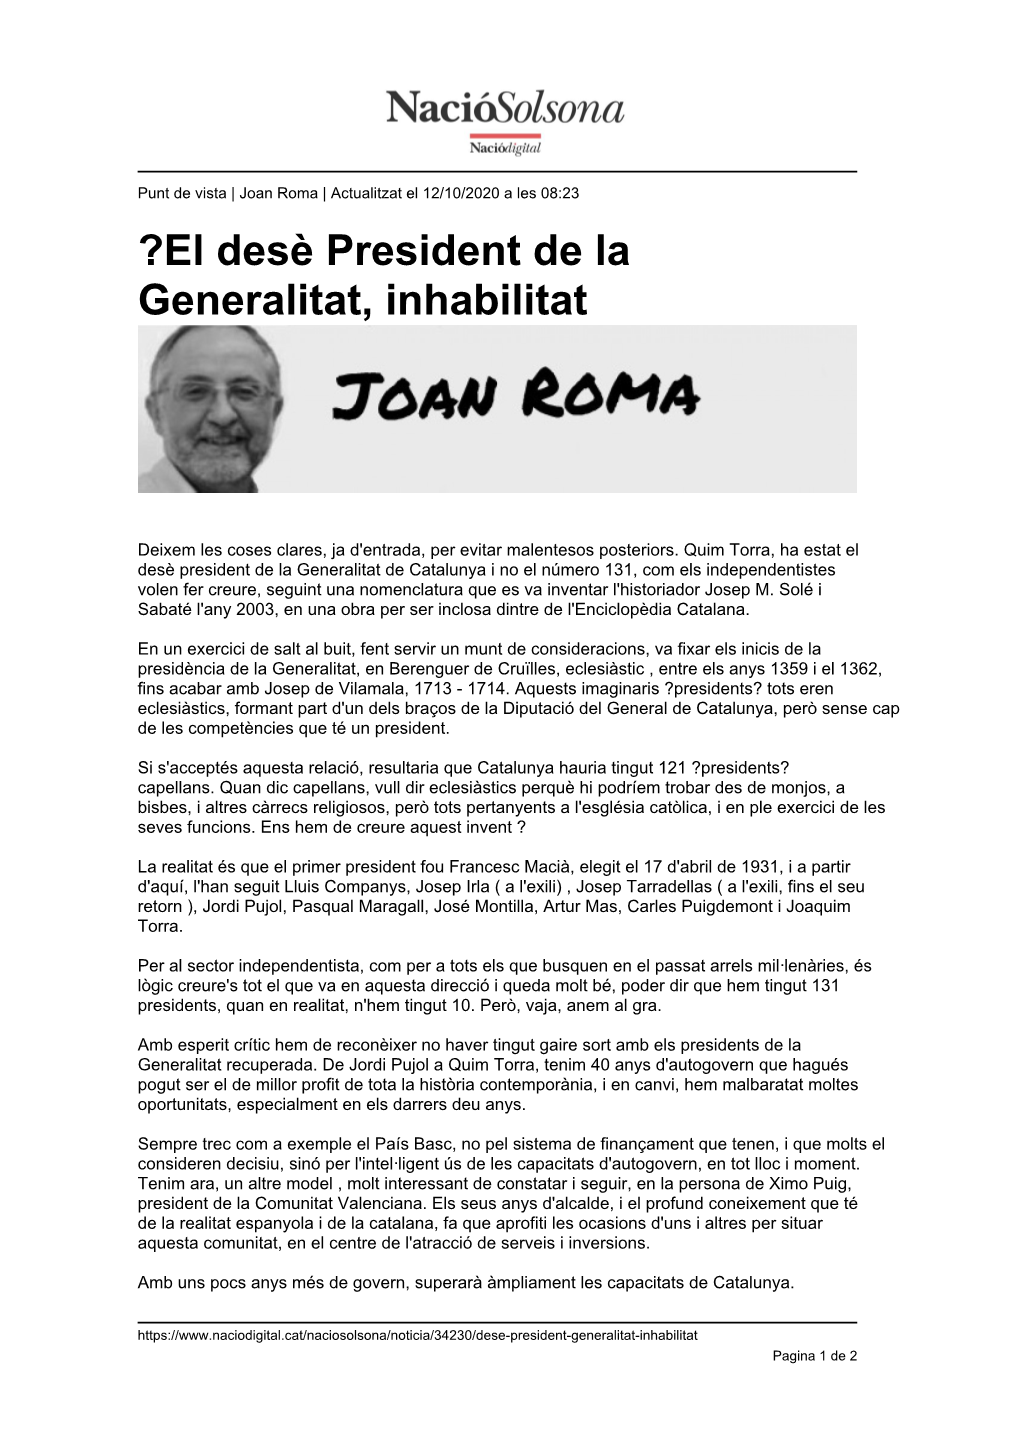 ?El Desè President De La Generalitat, Inhabilitat